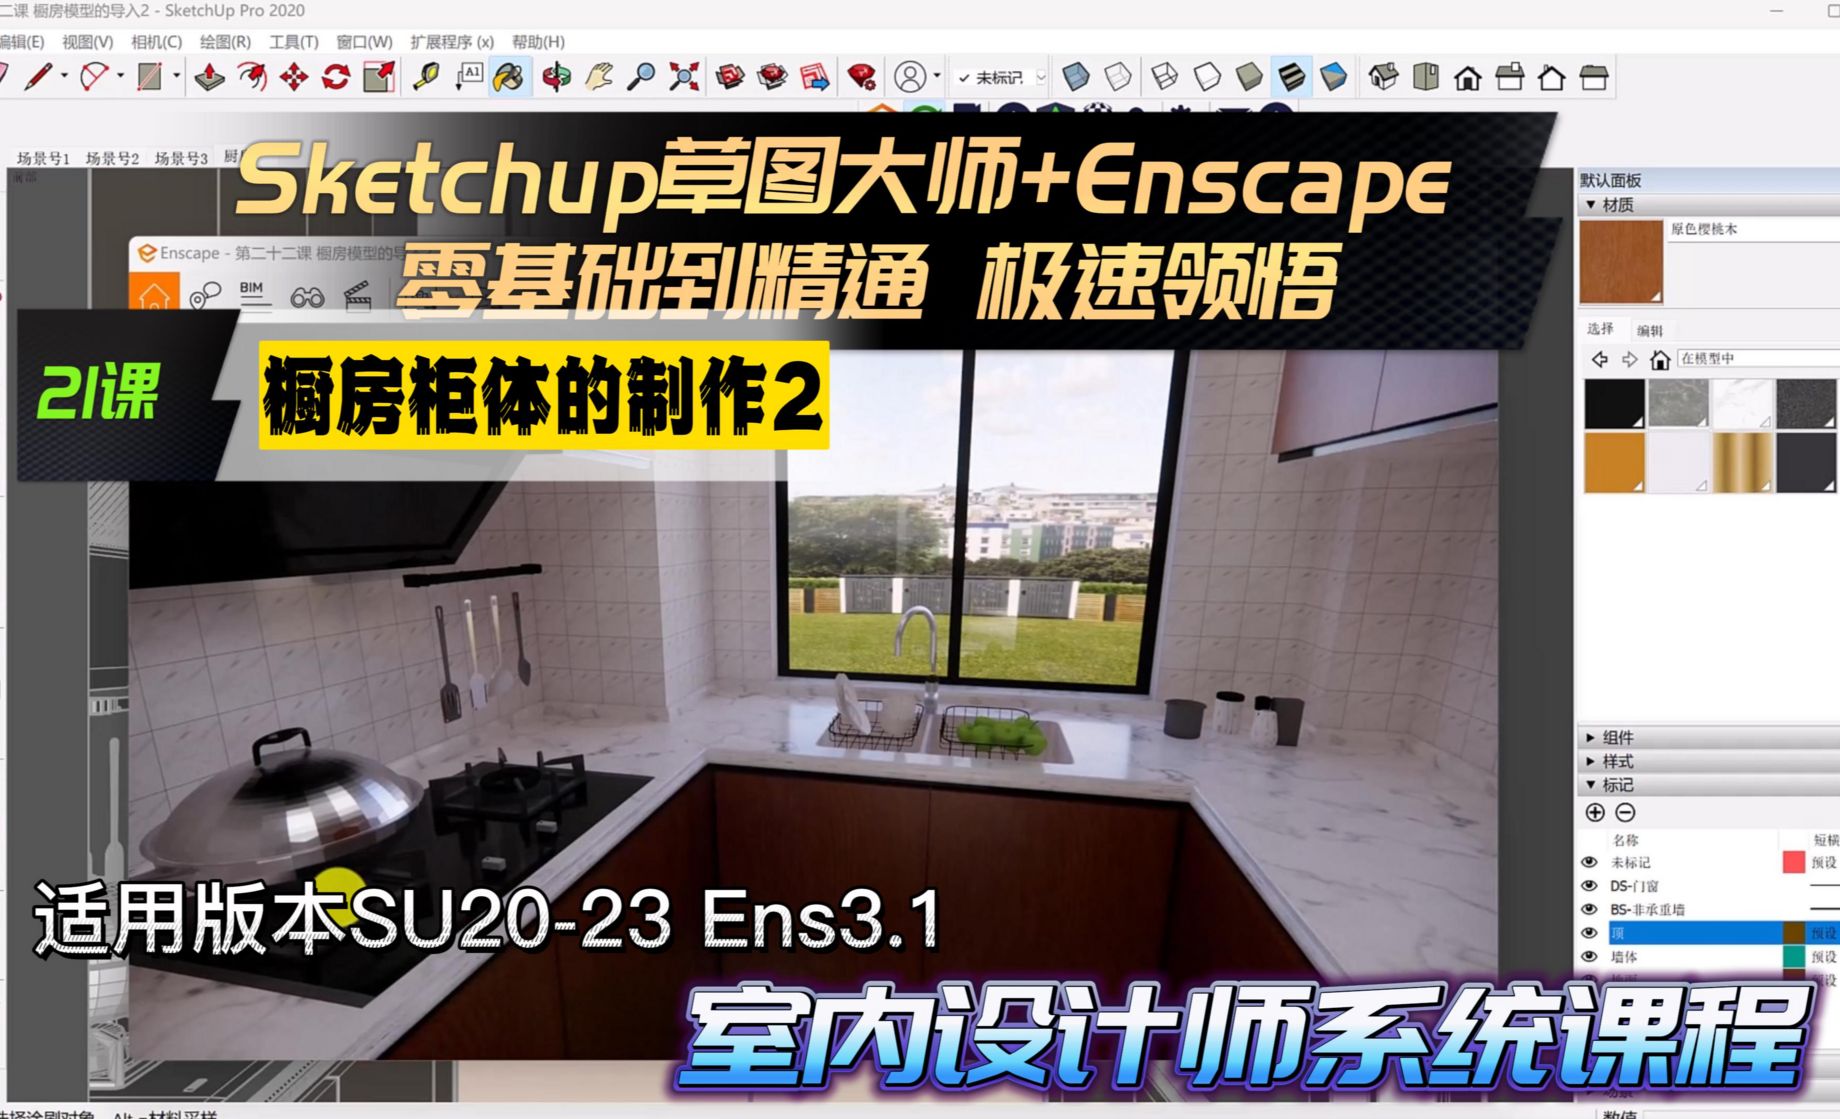 Sketchup+Enscape 室内设计极速领悟-橱房柜体的制作2